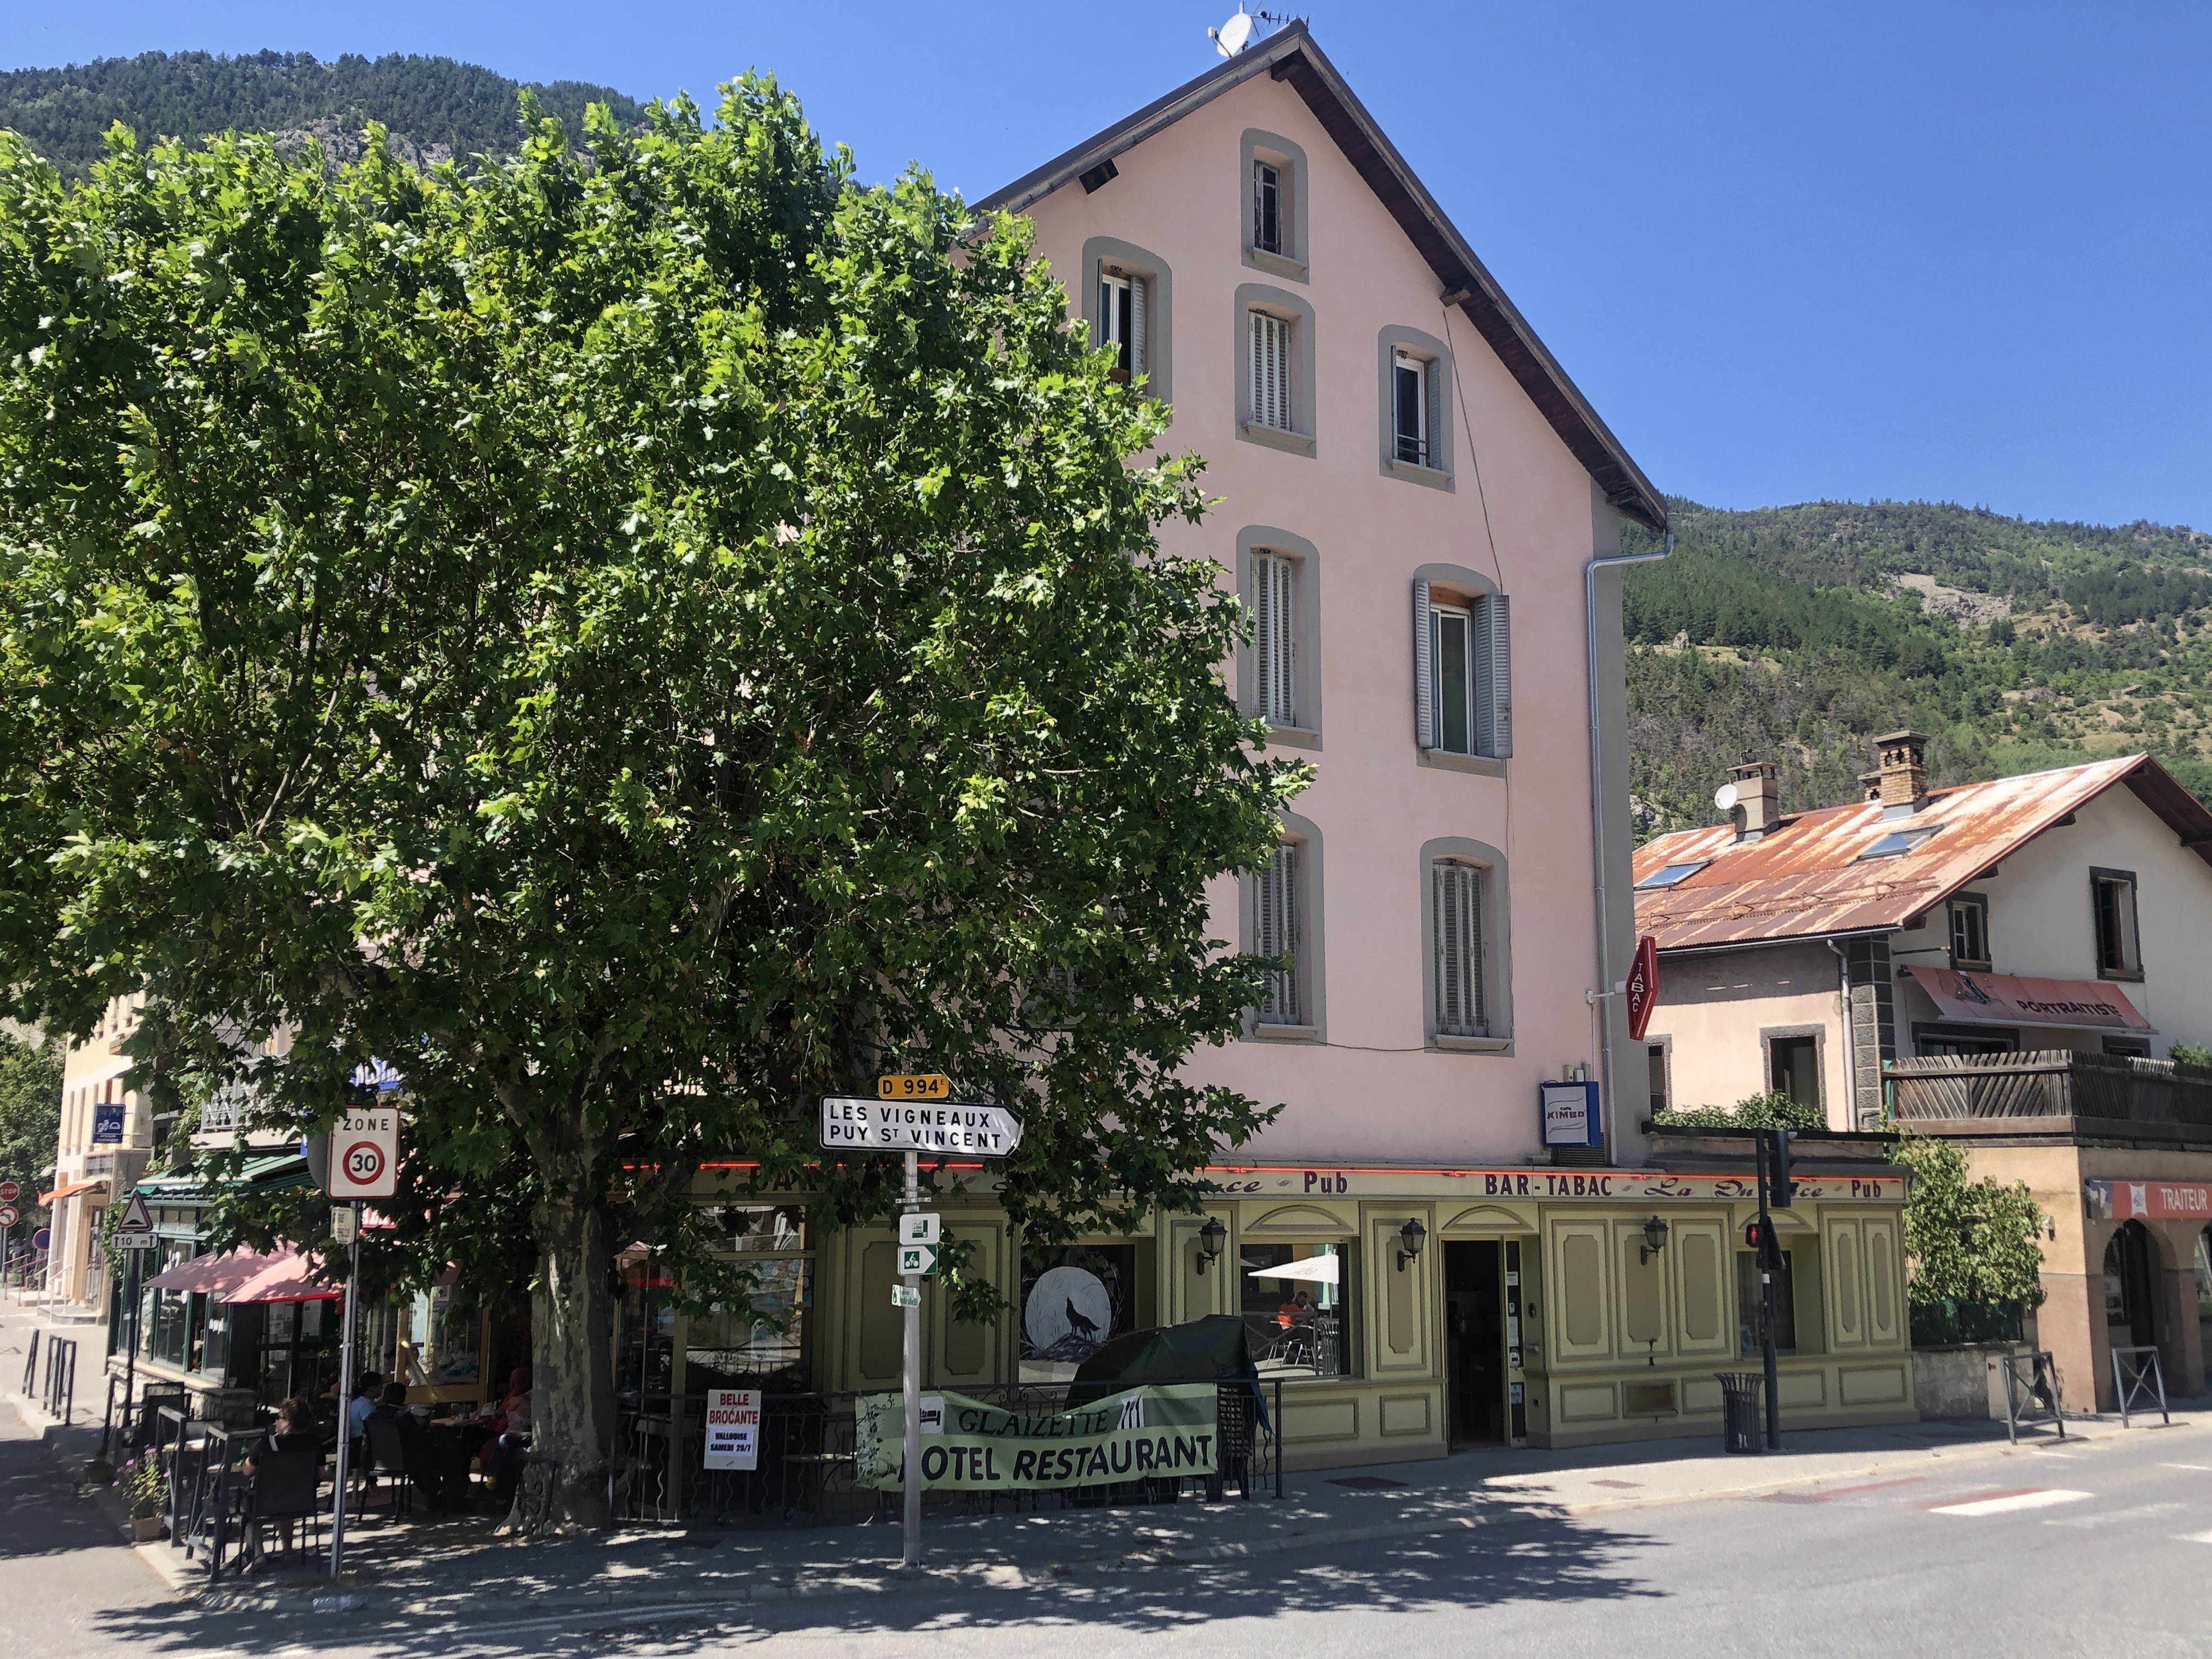 Bar Tabc FDJ dans un village dynamique (département Hautes Alpes)